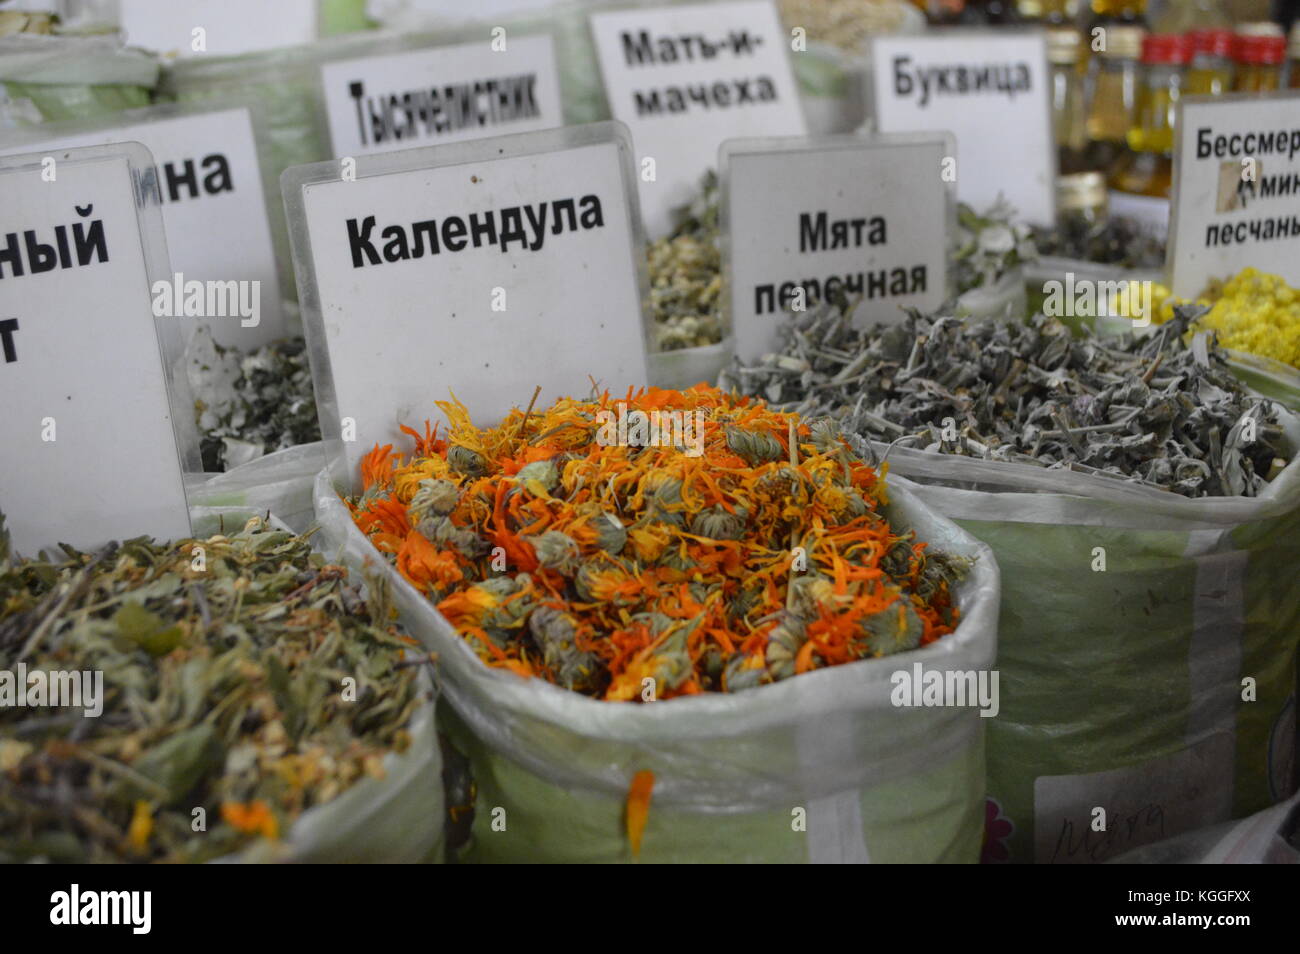 Mercado interior / bazar en Almaty, Kazajstán con hierbas y té. Caléndula escrita en lengua rusa. escritura cirílica. Foto de stock